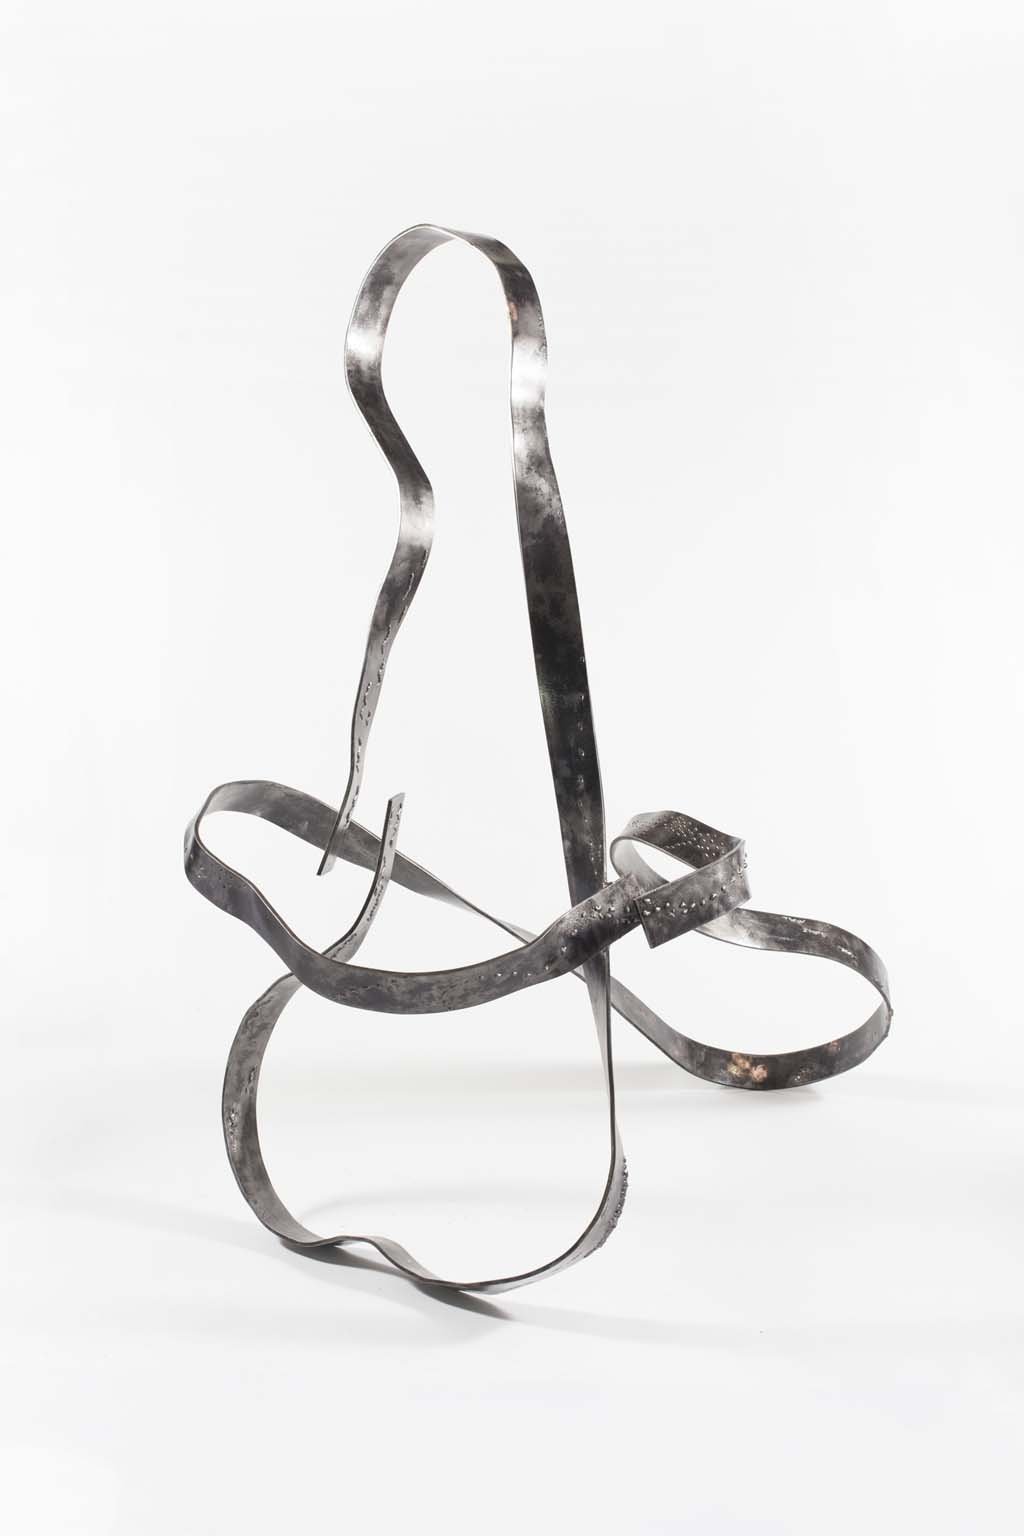 'Oblivion VIII' | Iron and brass sculpture | Artist: Rami Ater